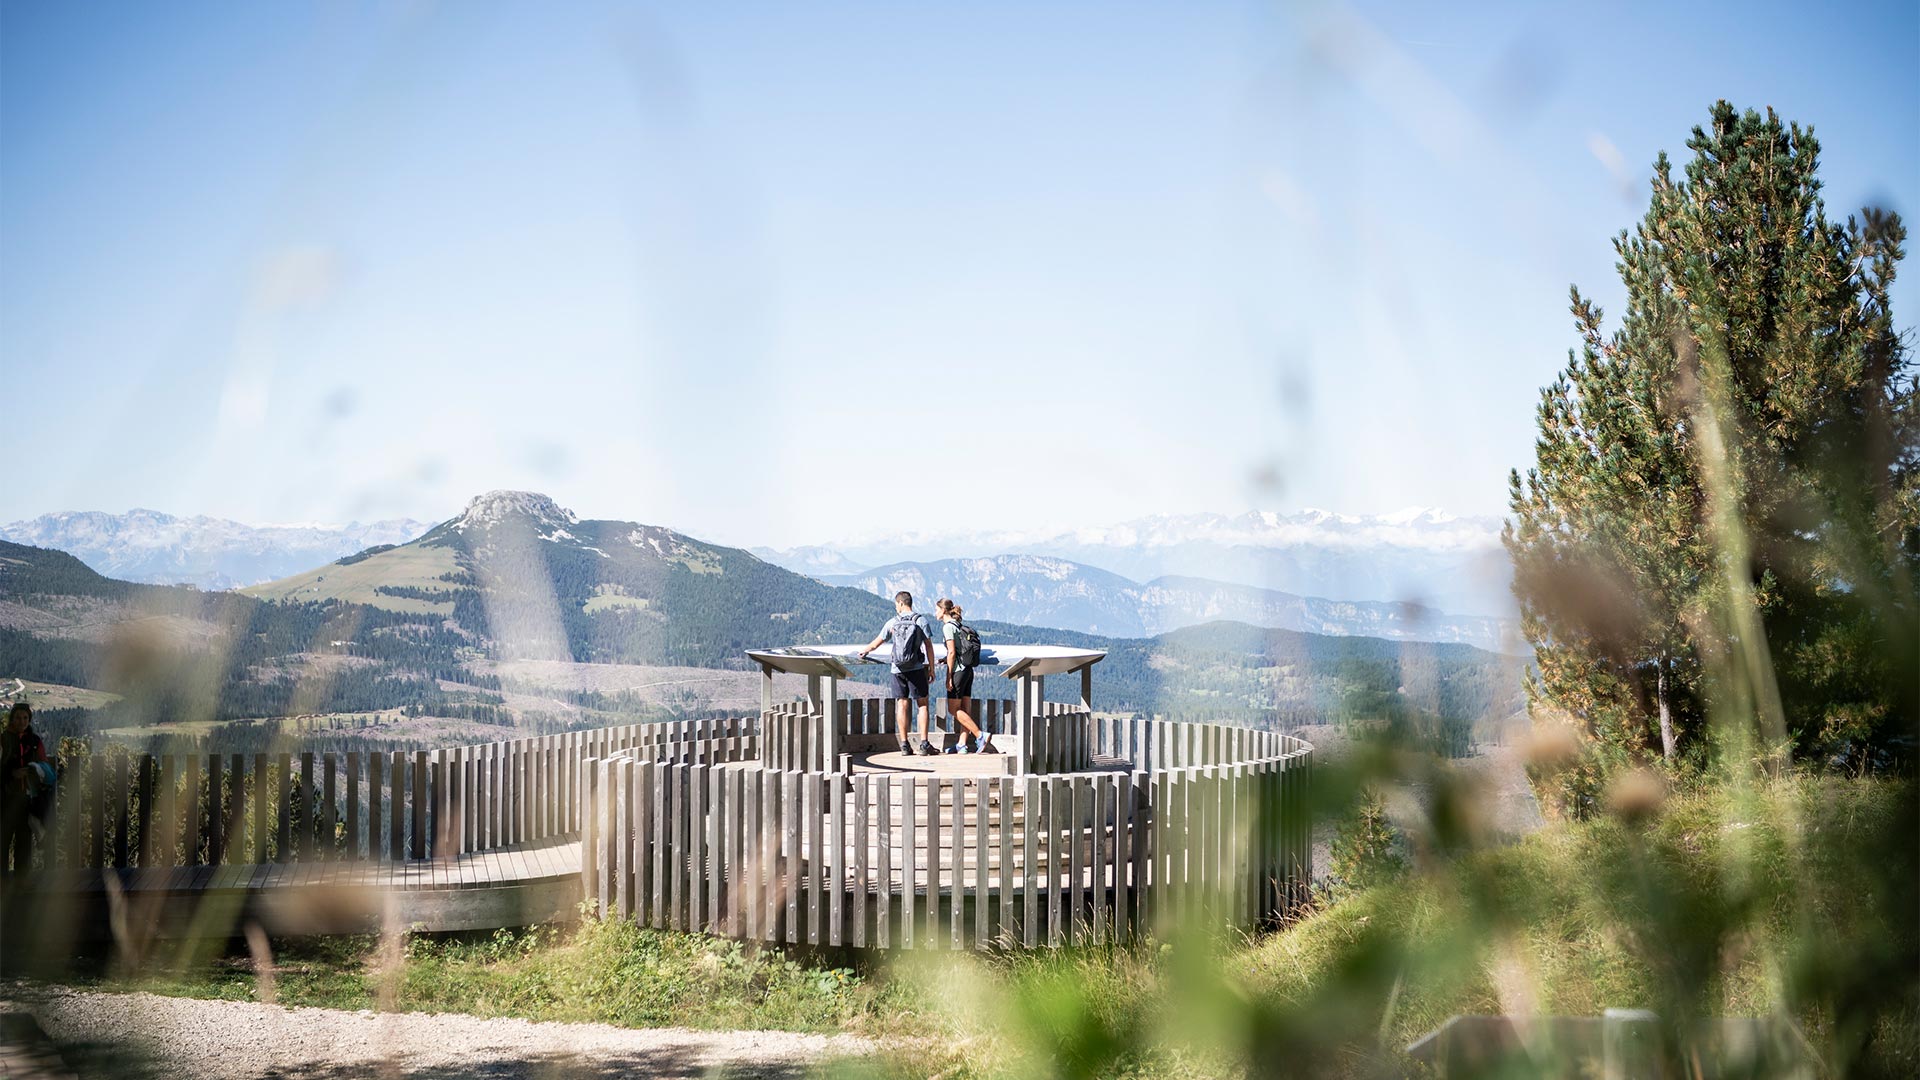 Zwei Wanderer stehen an einer Sehenswürdigkeit auf den Bozner Gipfeln und lesen Informationen über die Geschichte und Geografie der Landschaft.